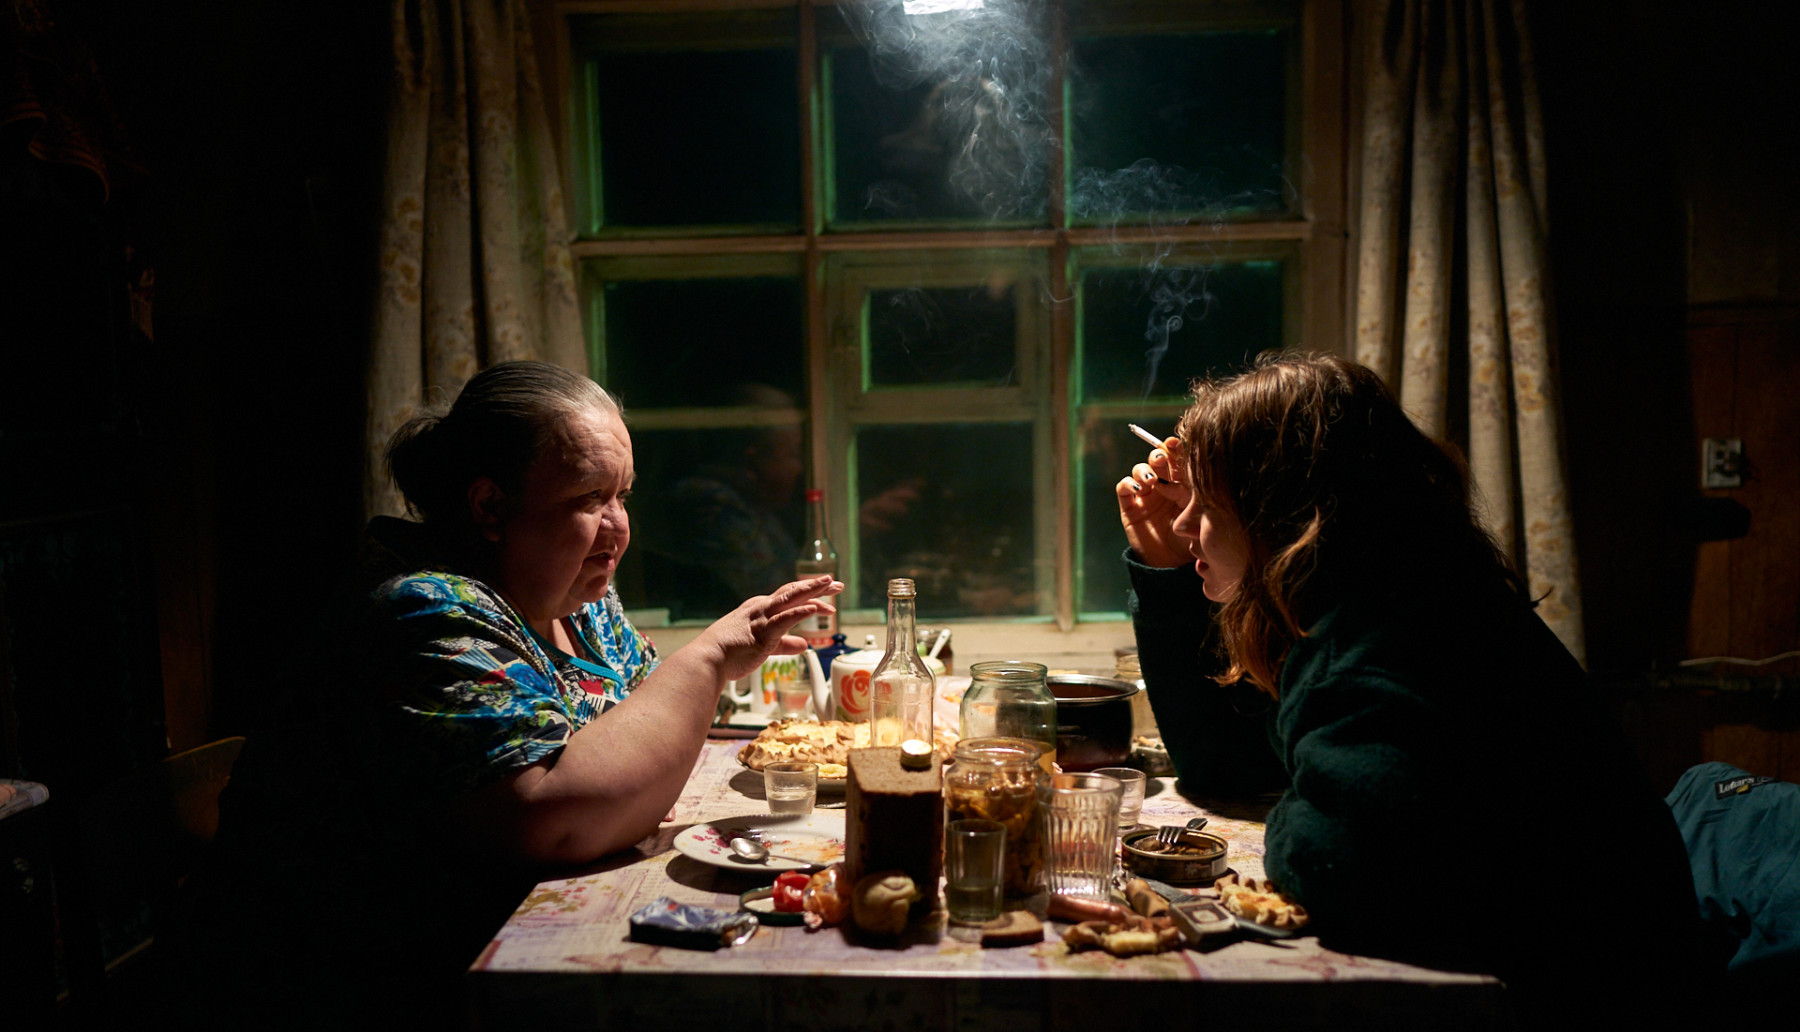 Une femme âgée et une femme plus jeune sont assises à une table de cuisine, où elles parlent ensemble tout en buvant et en fumant.